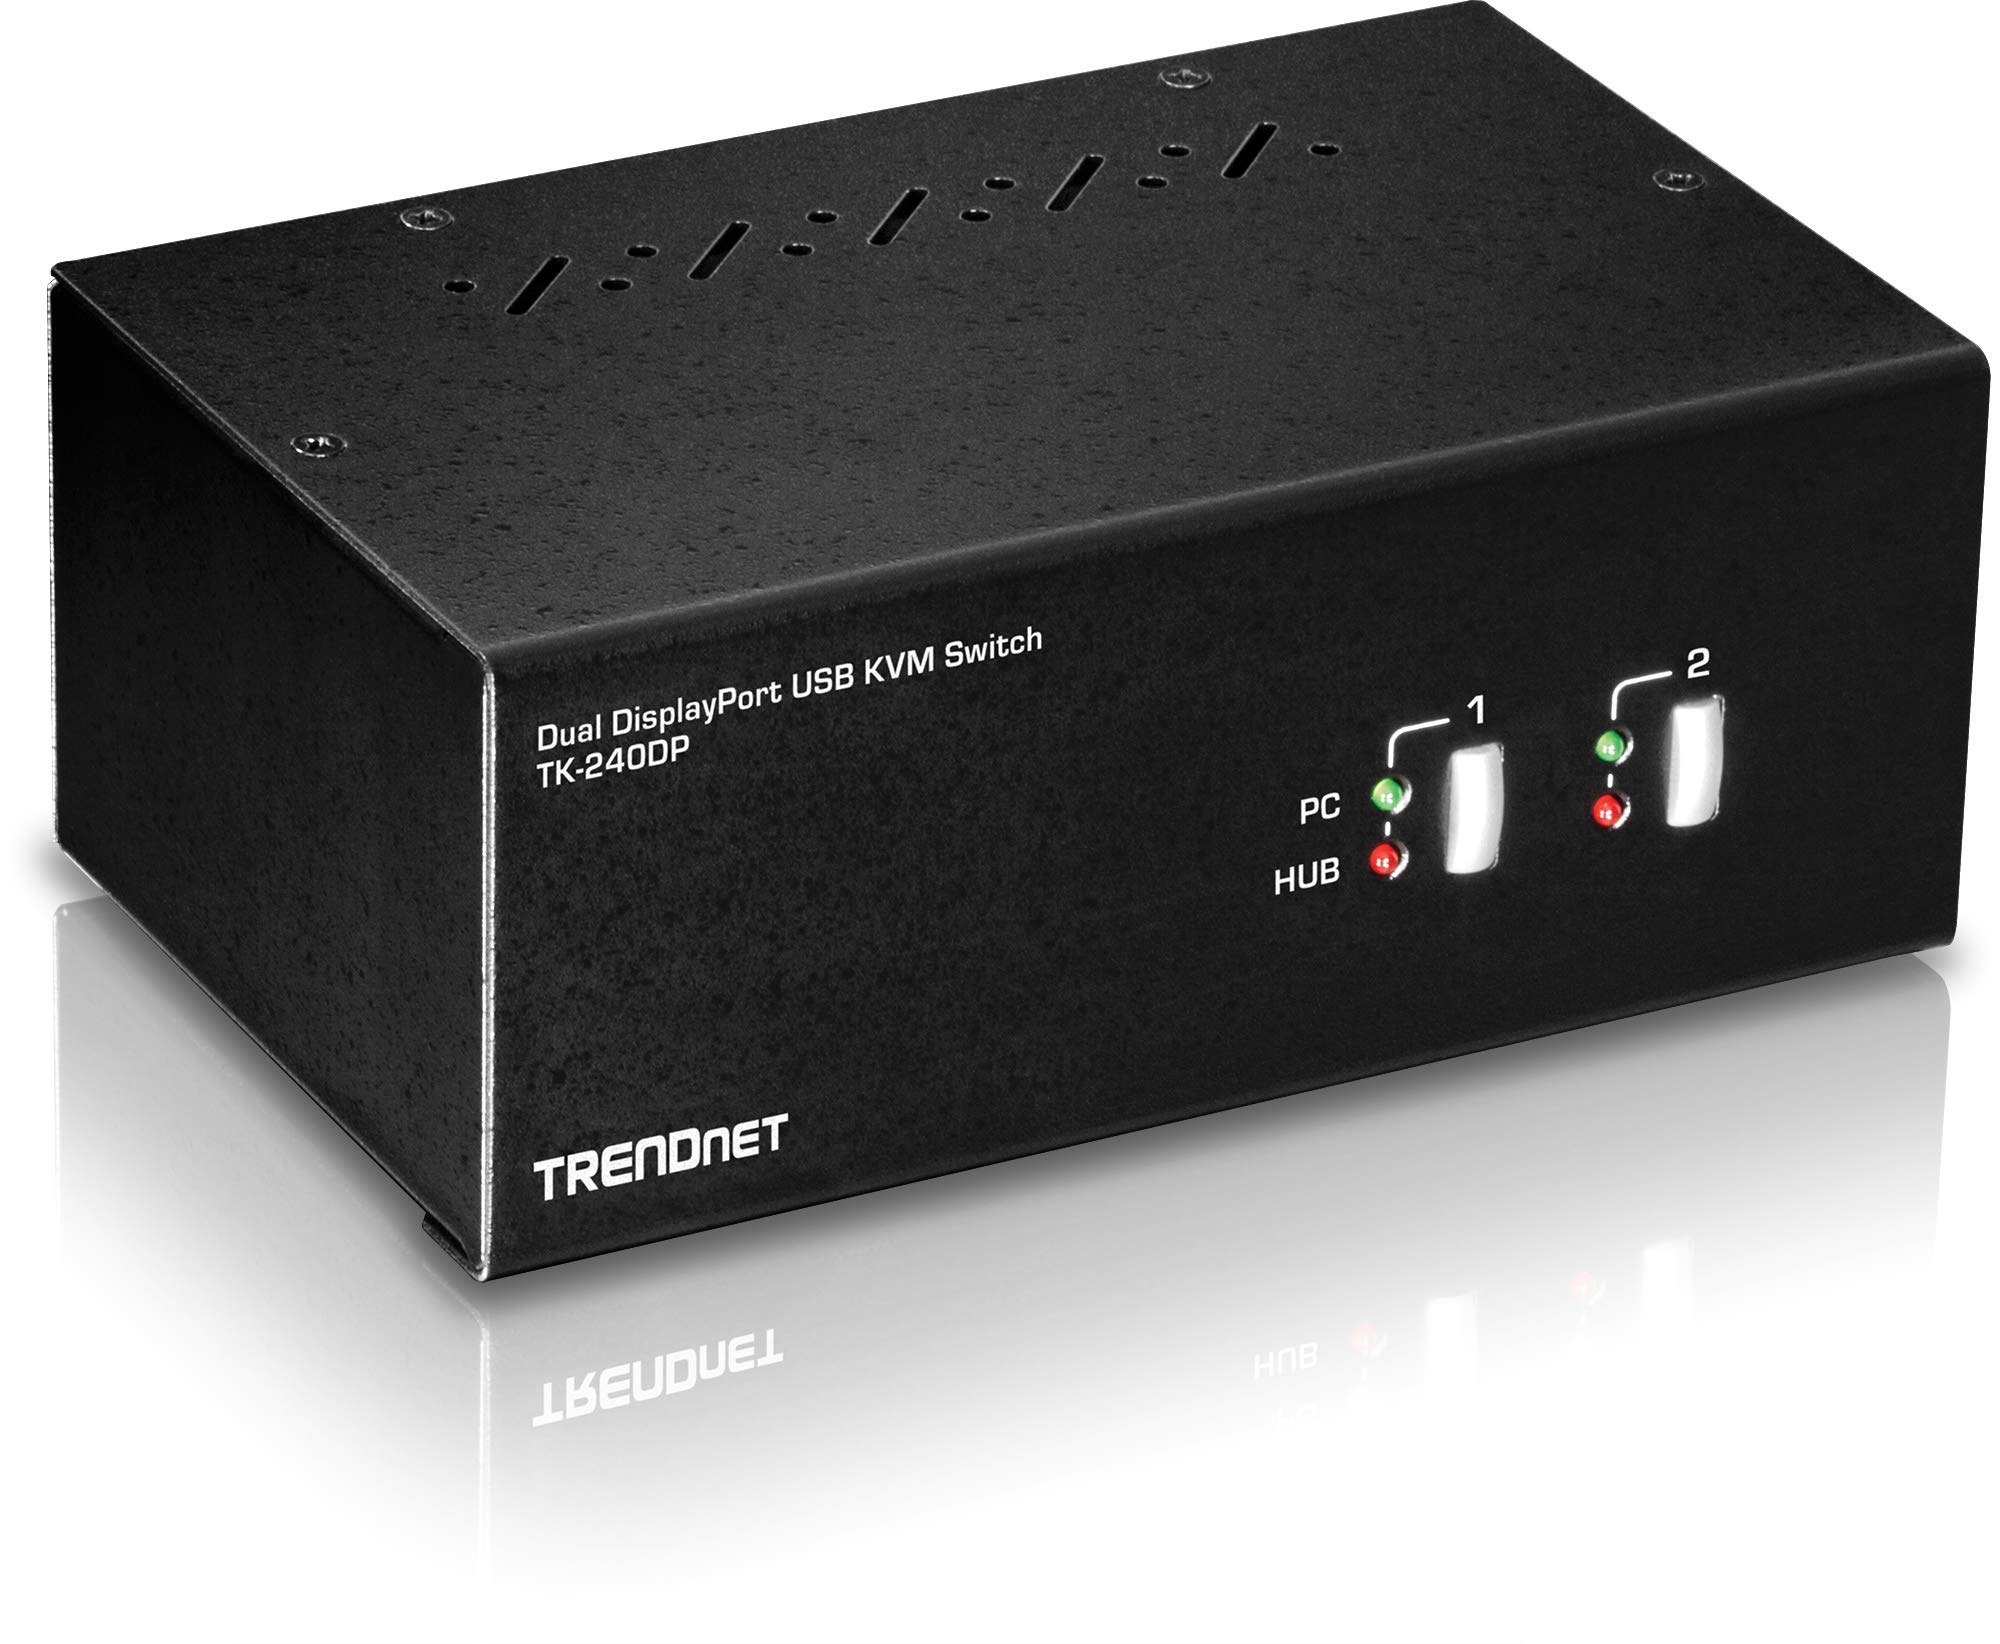 TRENDnet 2-Port Dual Monitor DisplayPort KVM Switch with Audio, 2-Port USB 2.0 Hub, 4K UHD Resolutions Up to 3840 x 2160, Connect Two DisplayPort Monitors, Dual Monitor KVM Switch, Black, TK-240DP